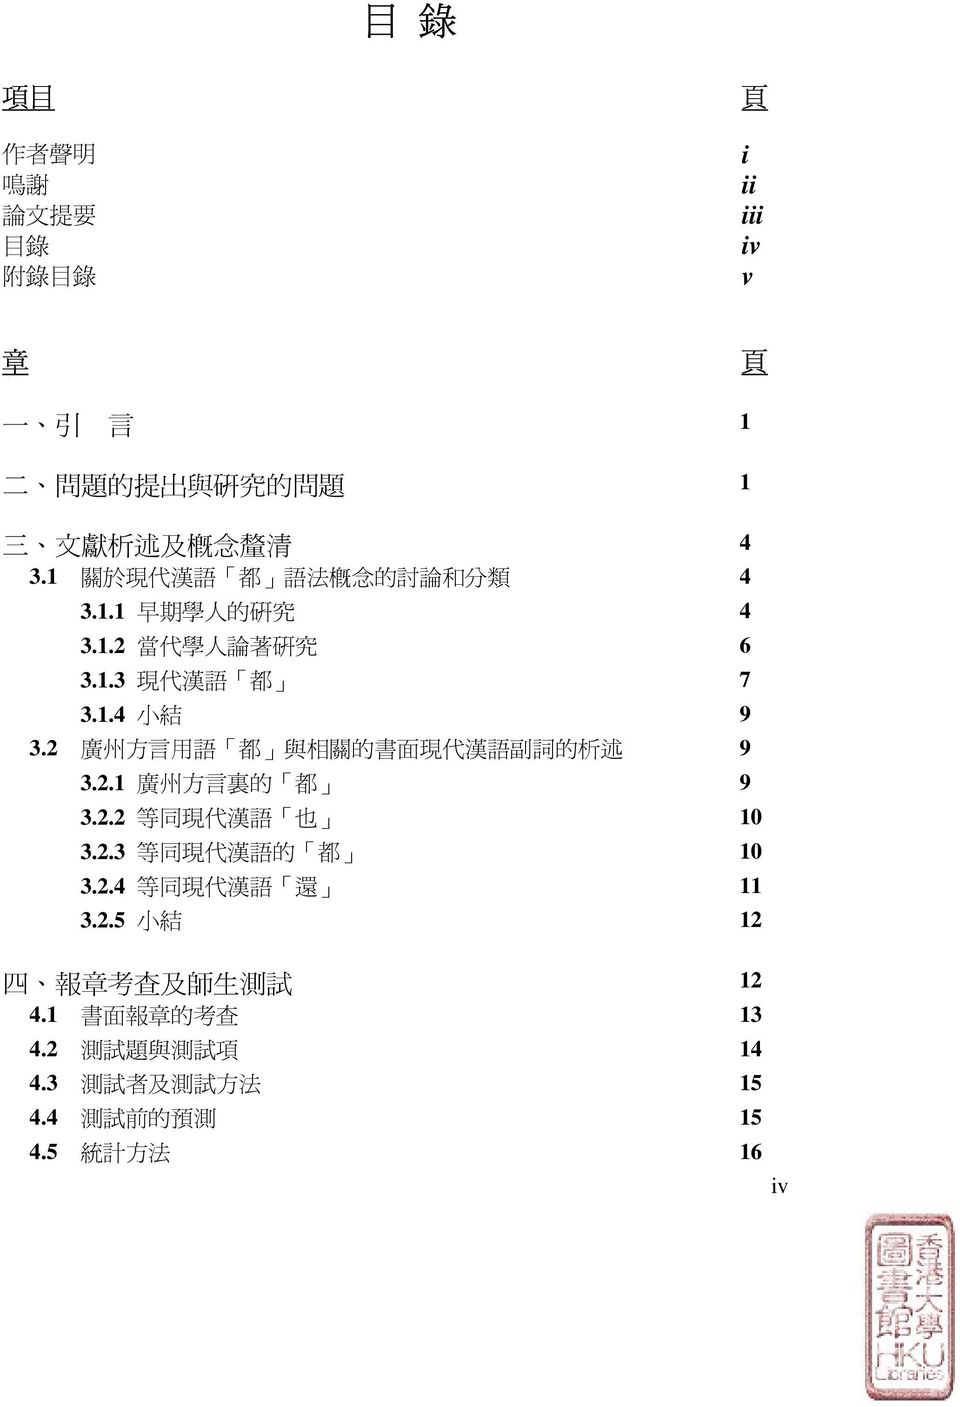 2 廣 州 方 言 用 語 都 與 相 關 的 書 面 現 代 漢 語 副 詞 的 析 述 9 3.2.1 廣 州 方 言 裏 的 都 9 3.2.2 等 同 現 代 漢 語 也 10 3.2.3 等 同 現 代 漢 語 的 都 10 3.2.4 等 同 現 代 漢 語 還 11 3.